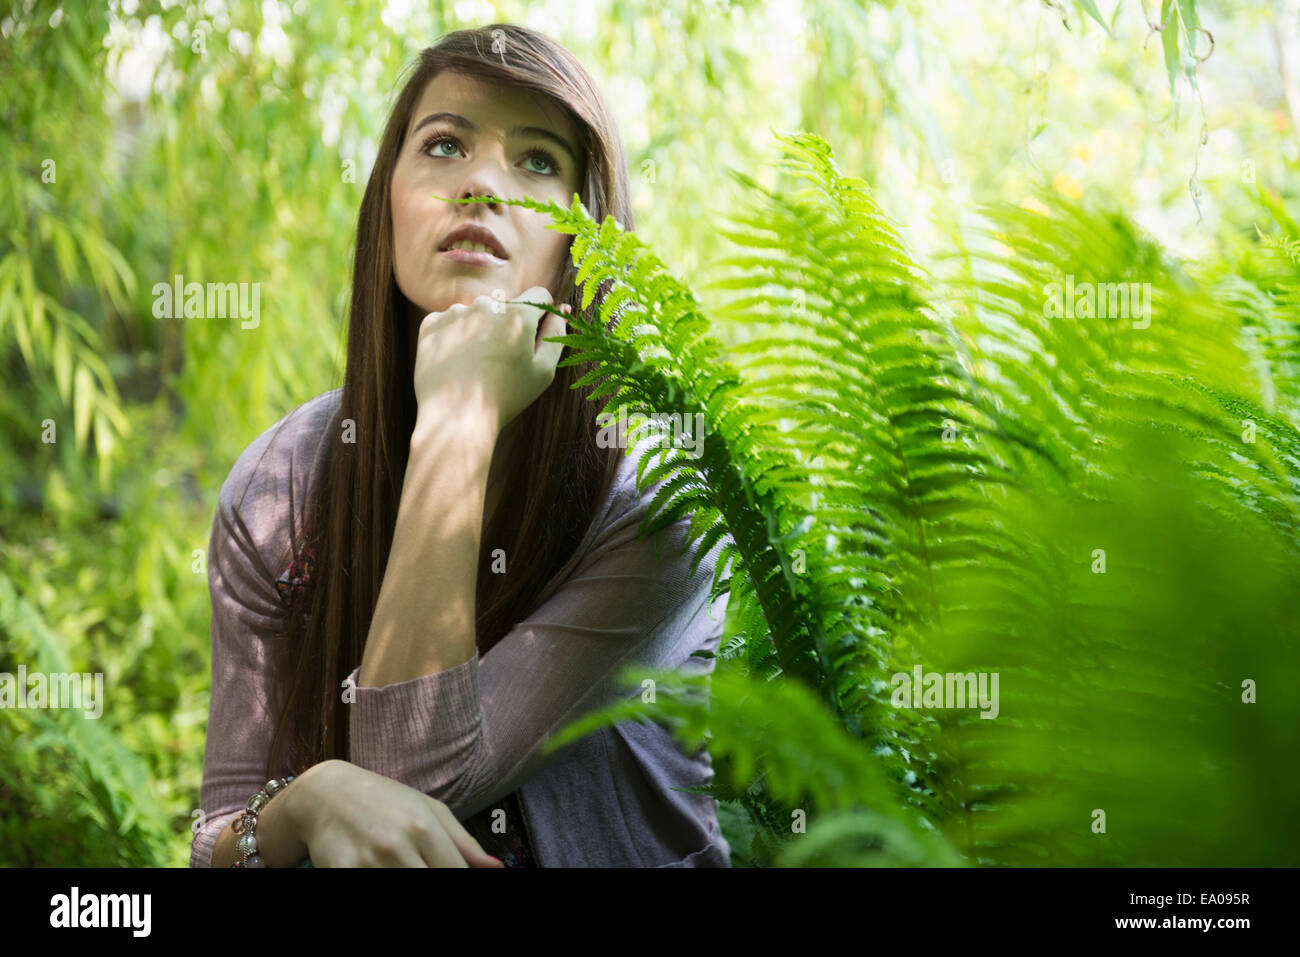 Woman kneeling by fern Stock Photo